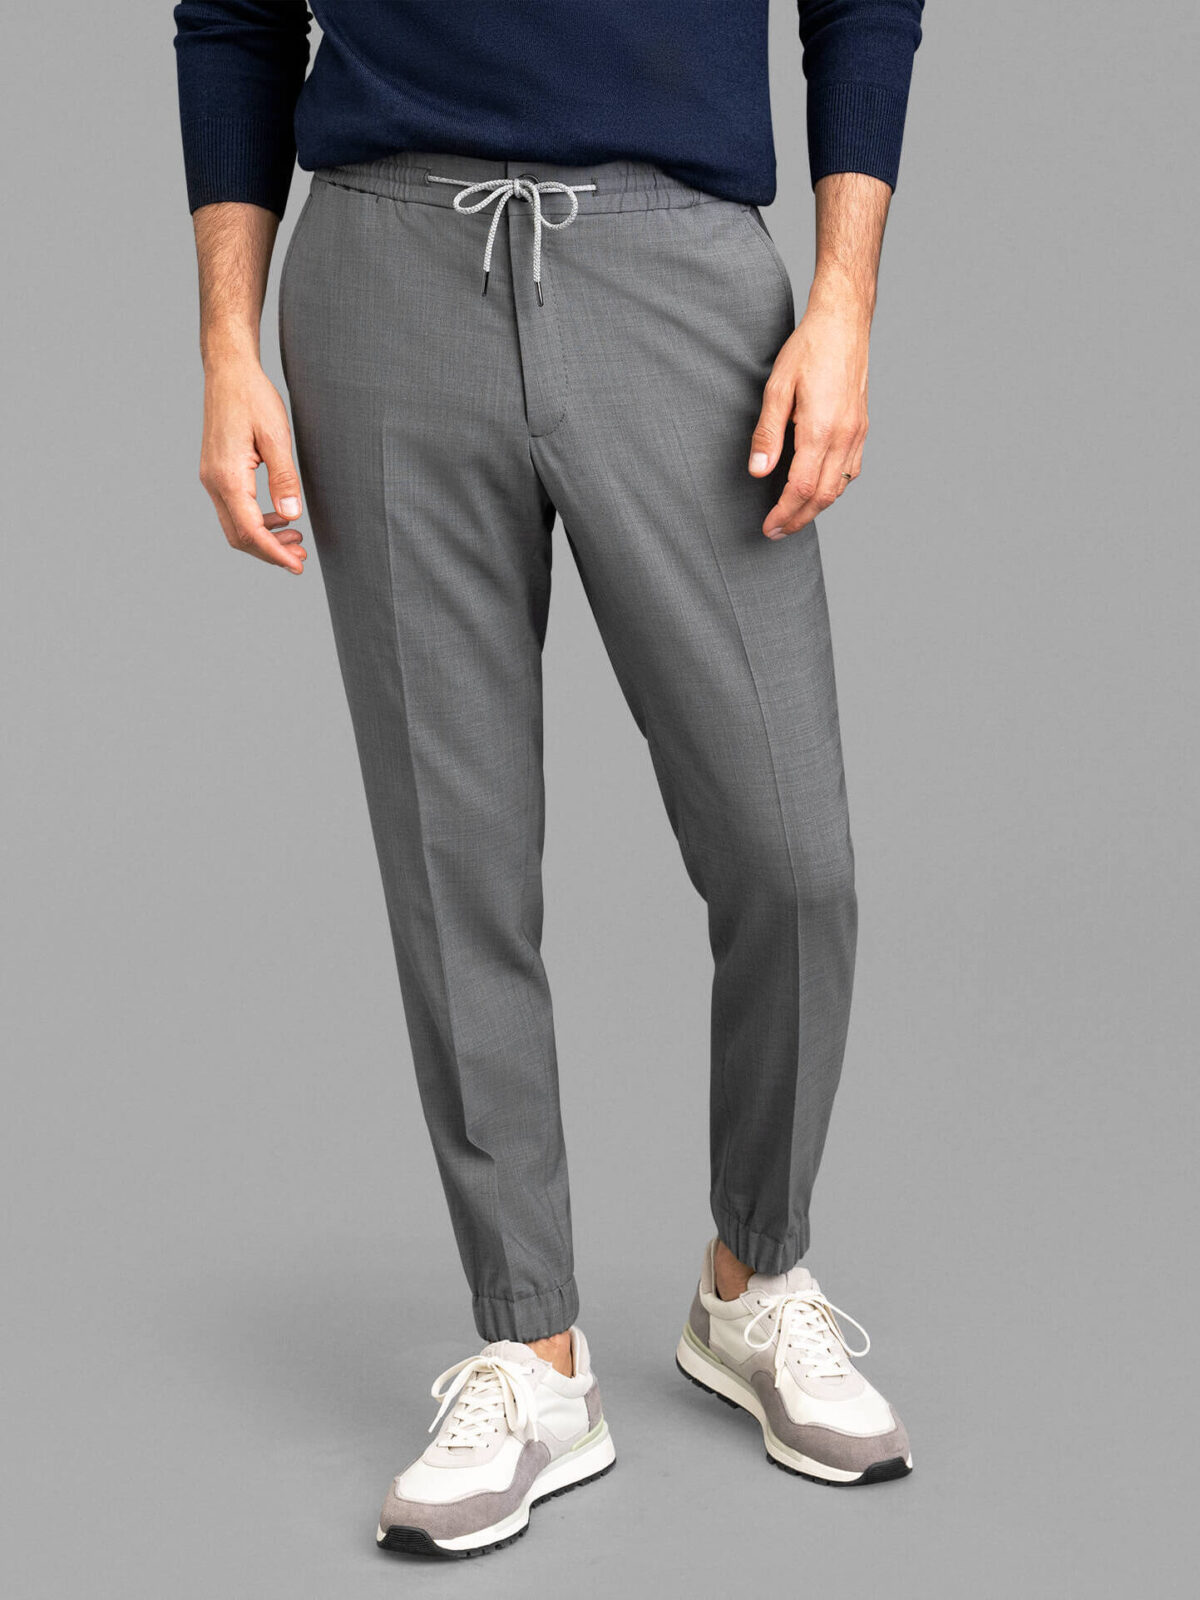 Men's Trousers Elastic Waistband Sides Buttons Workout Jogger Pants  Sweatpants Sport Pants